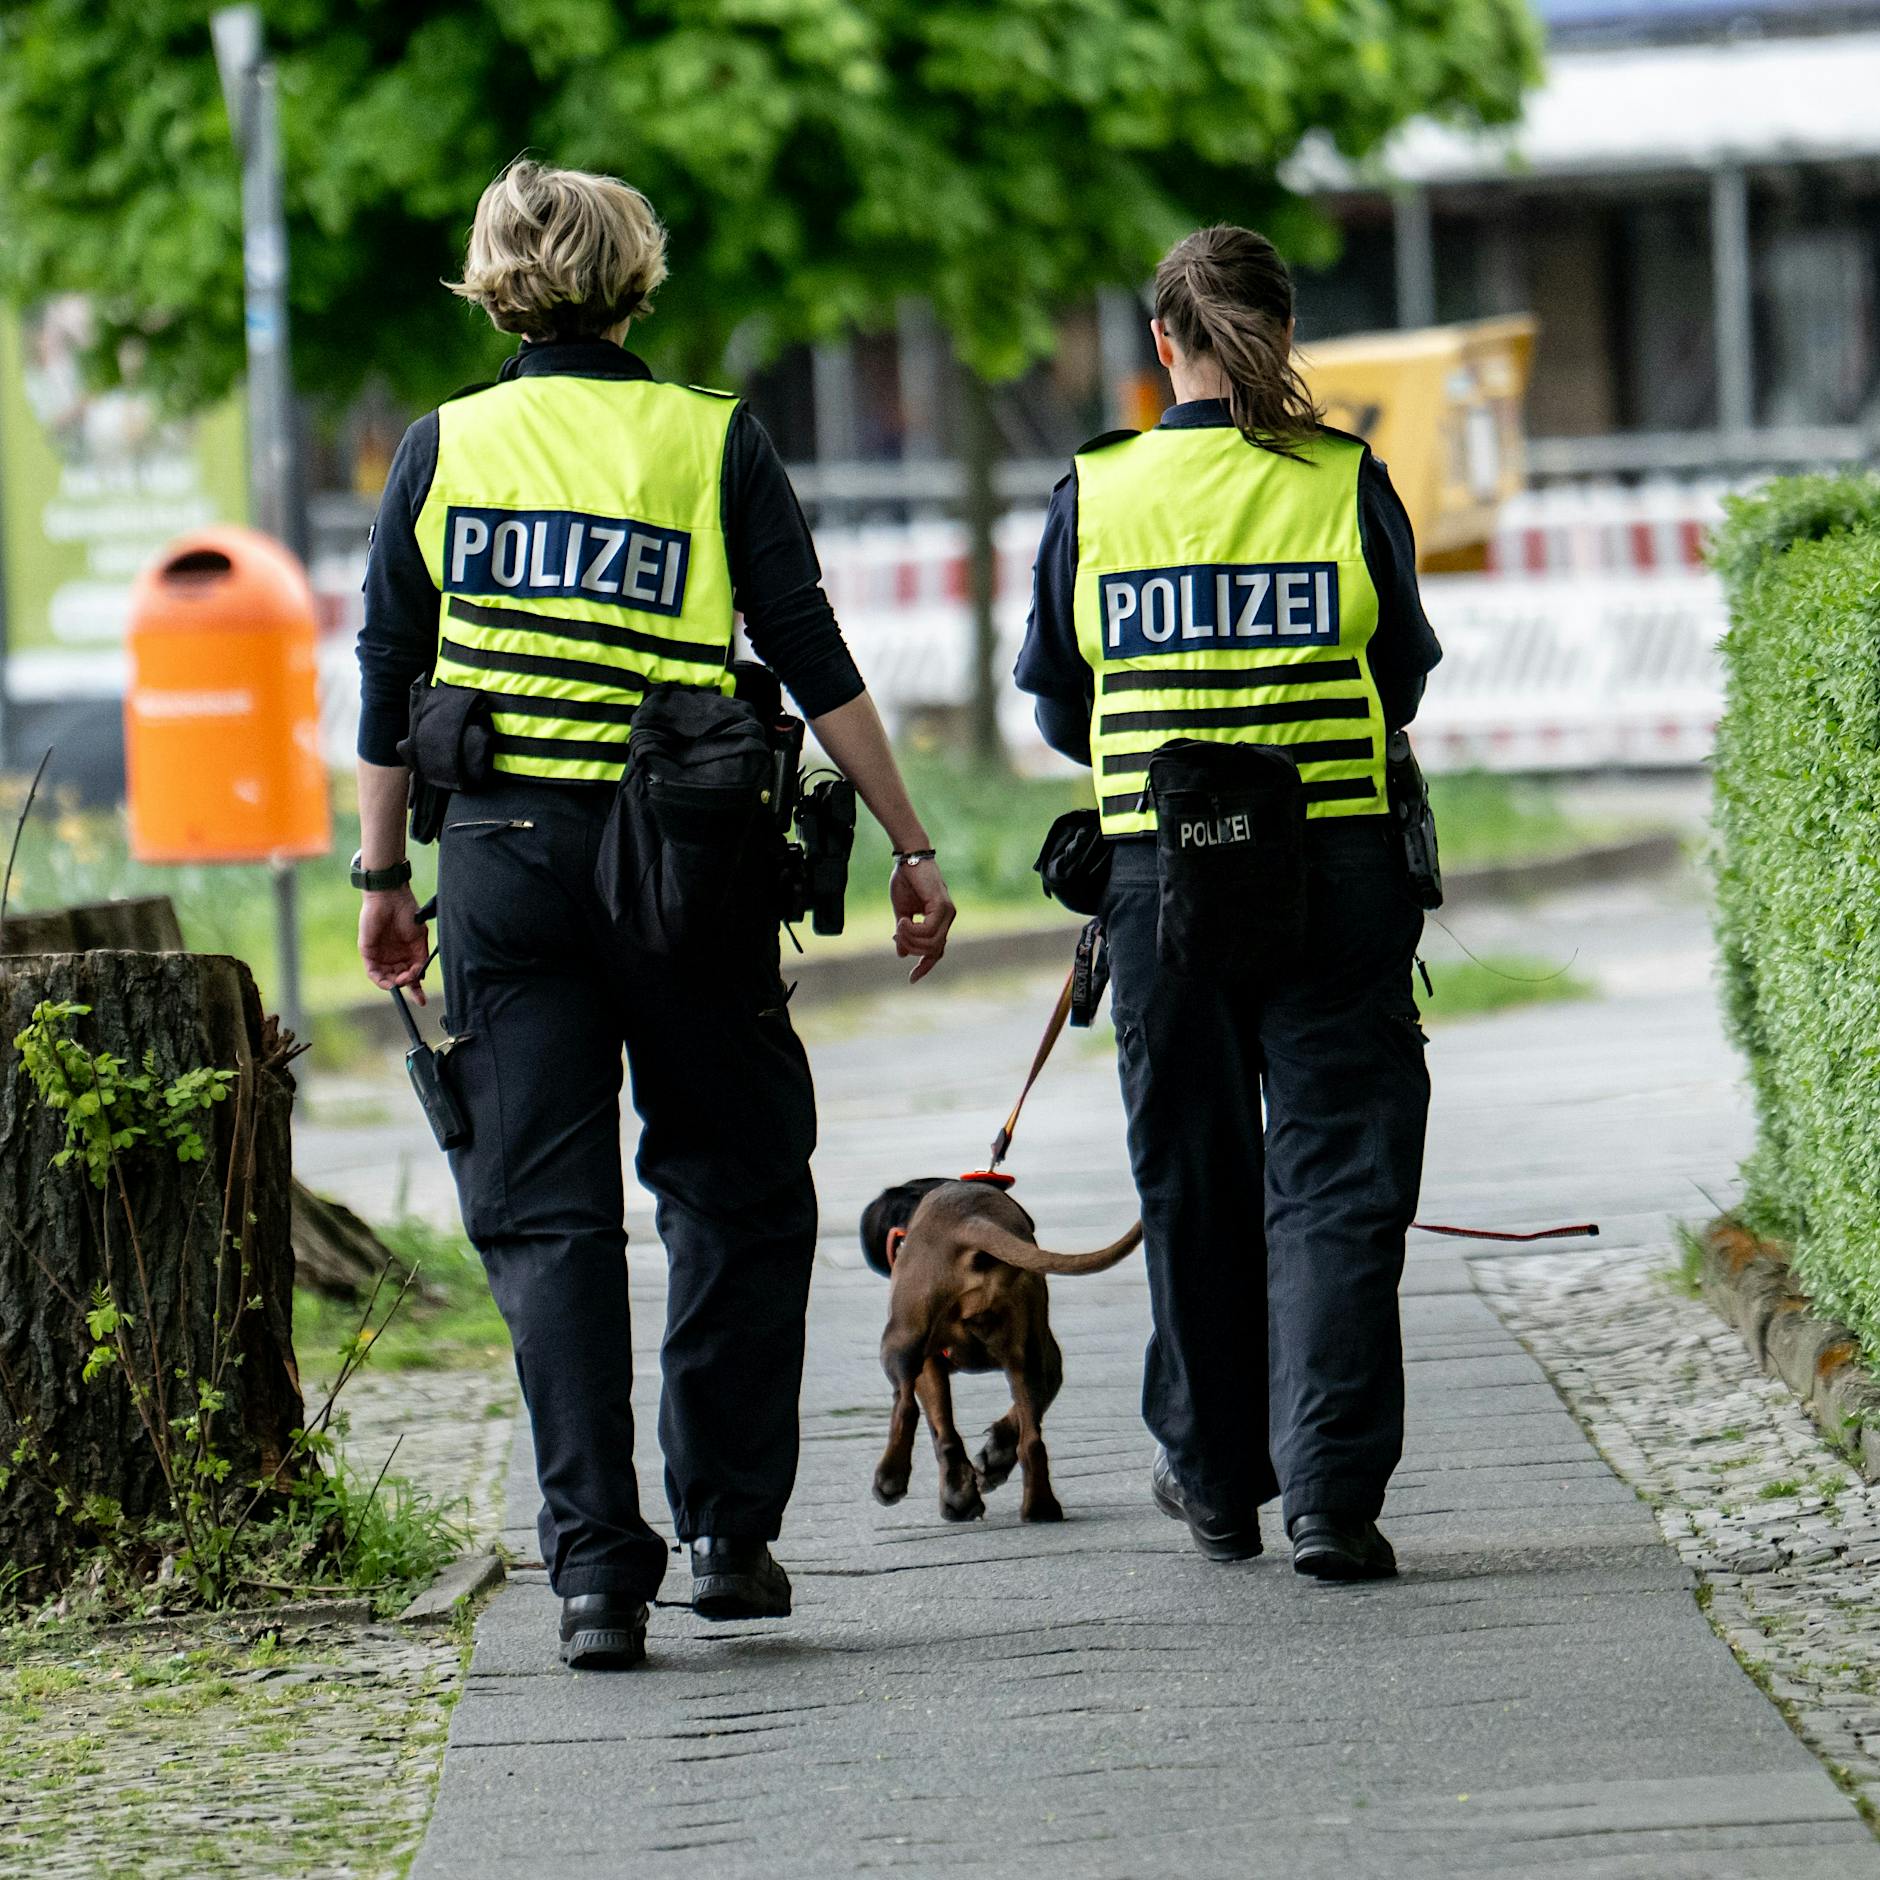 23-Jährige in Berlin vermisst: Polizei bittet um Mithilfe